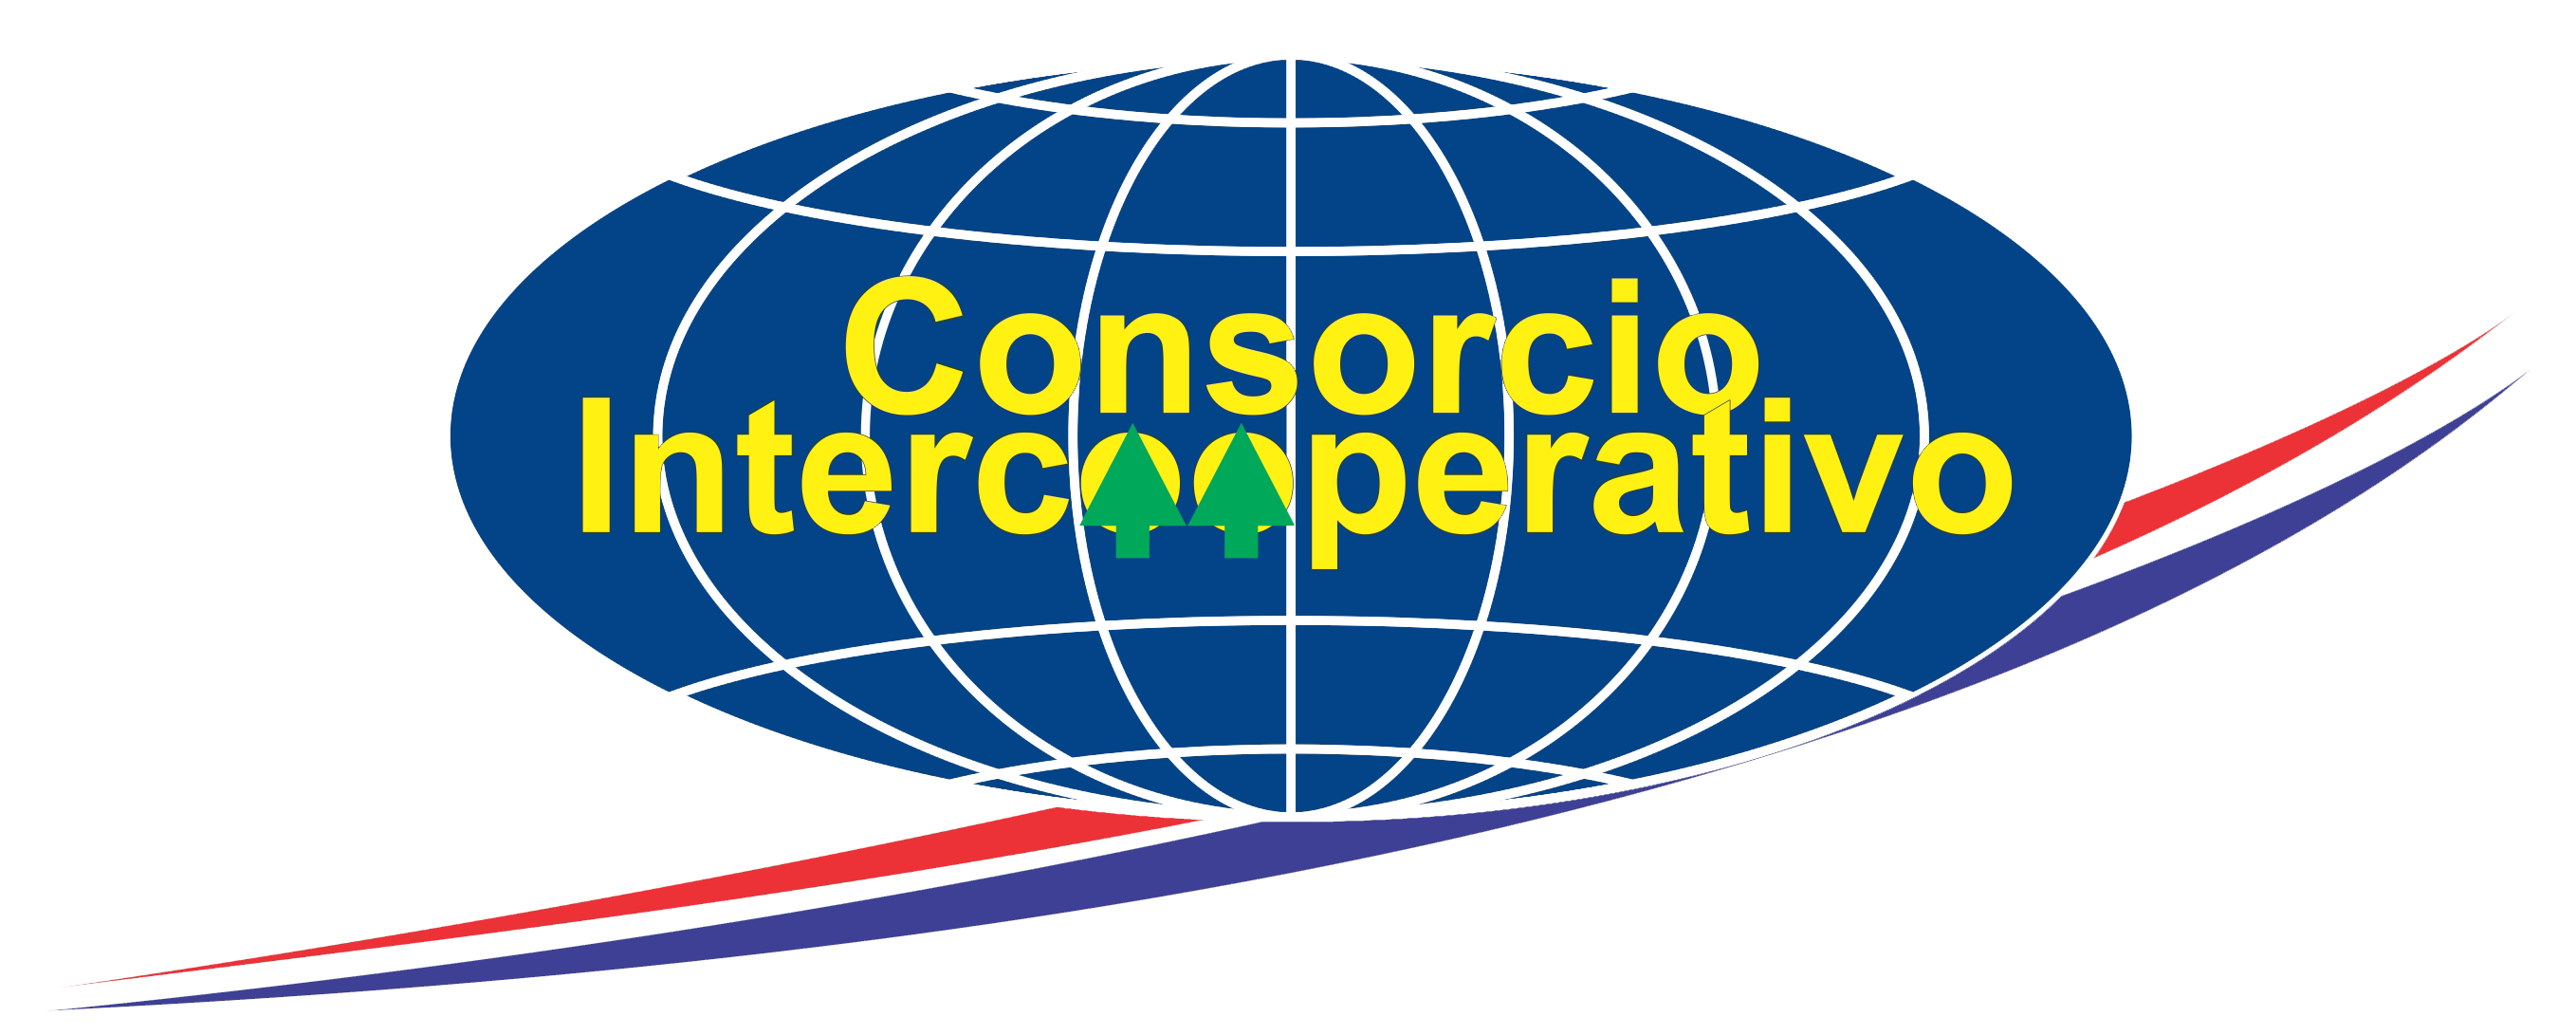 Campus Consorcio Intercooperativo